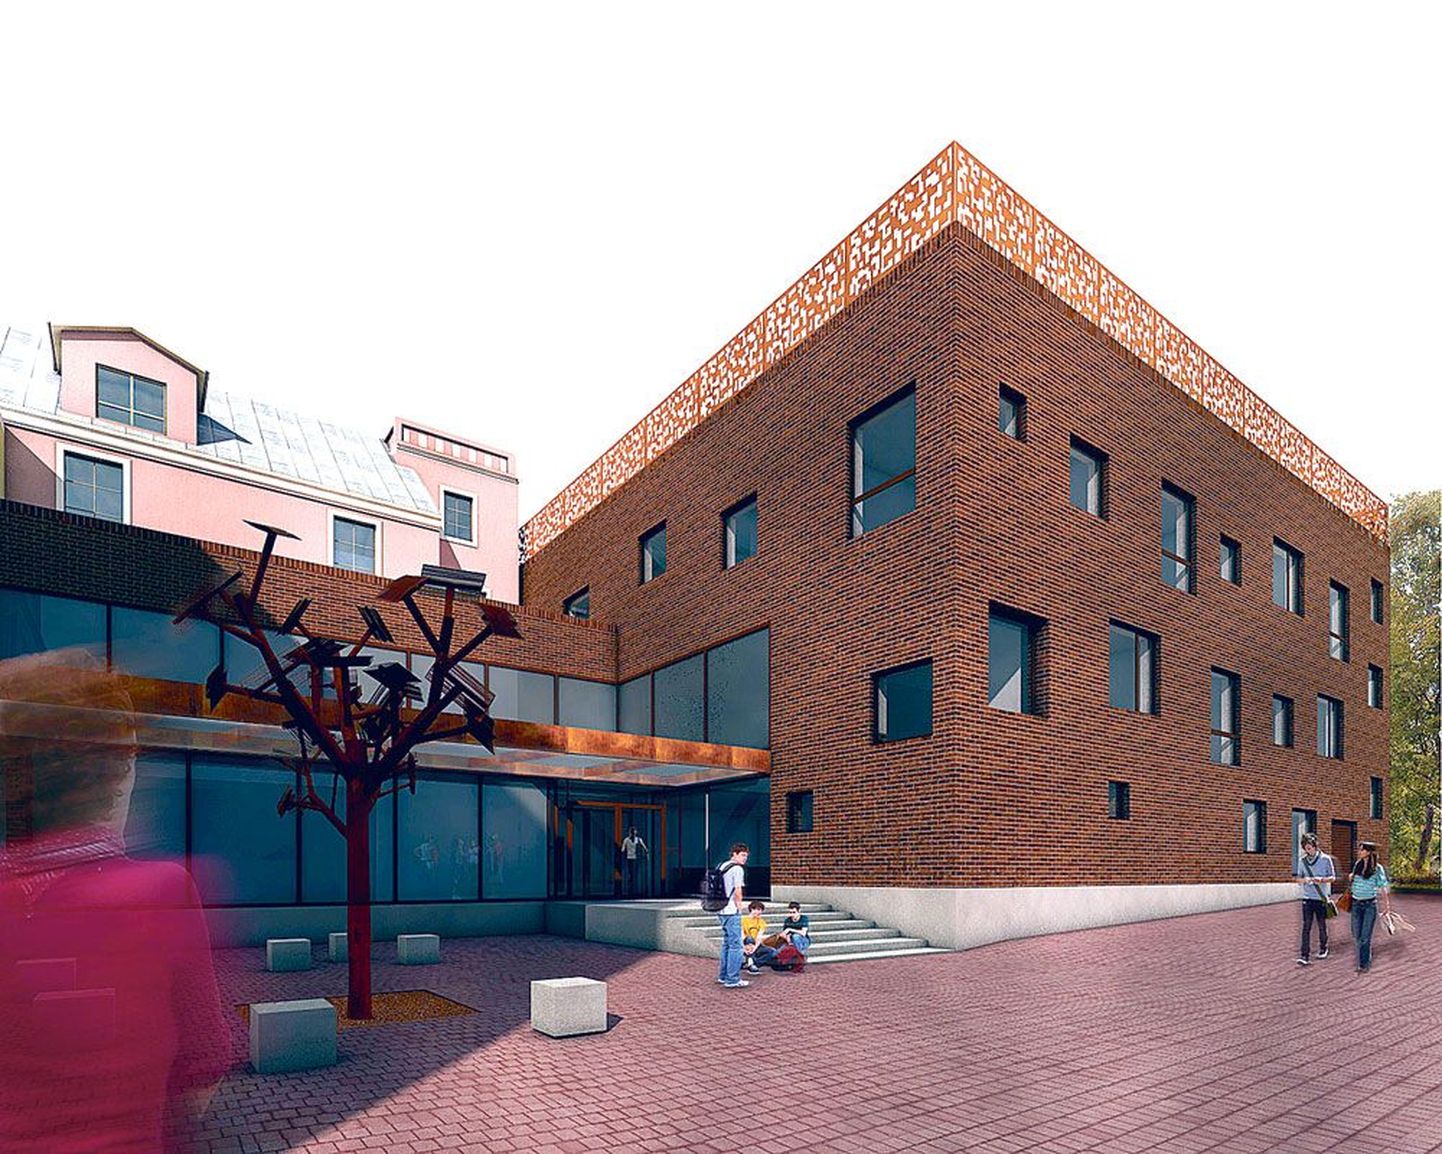 Elleri muusikakooli juurdeehitise fassaad on planeeritud punakaspruunidest tellistest, mis viitab Tartu rikkalikule tellisarhitektuurile. Kooli uus peasissepääs tuleb sisehoovi, uue ja vana õppehoone vahele.